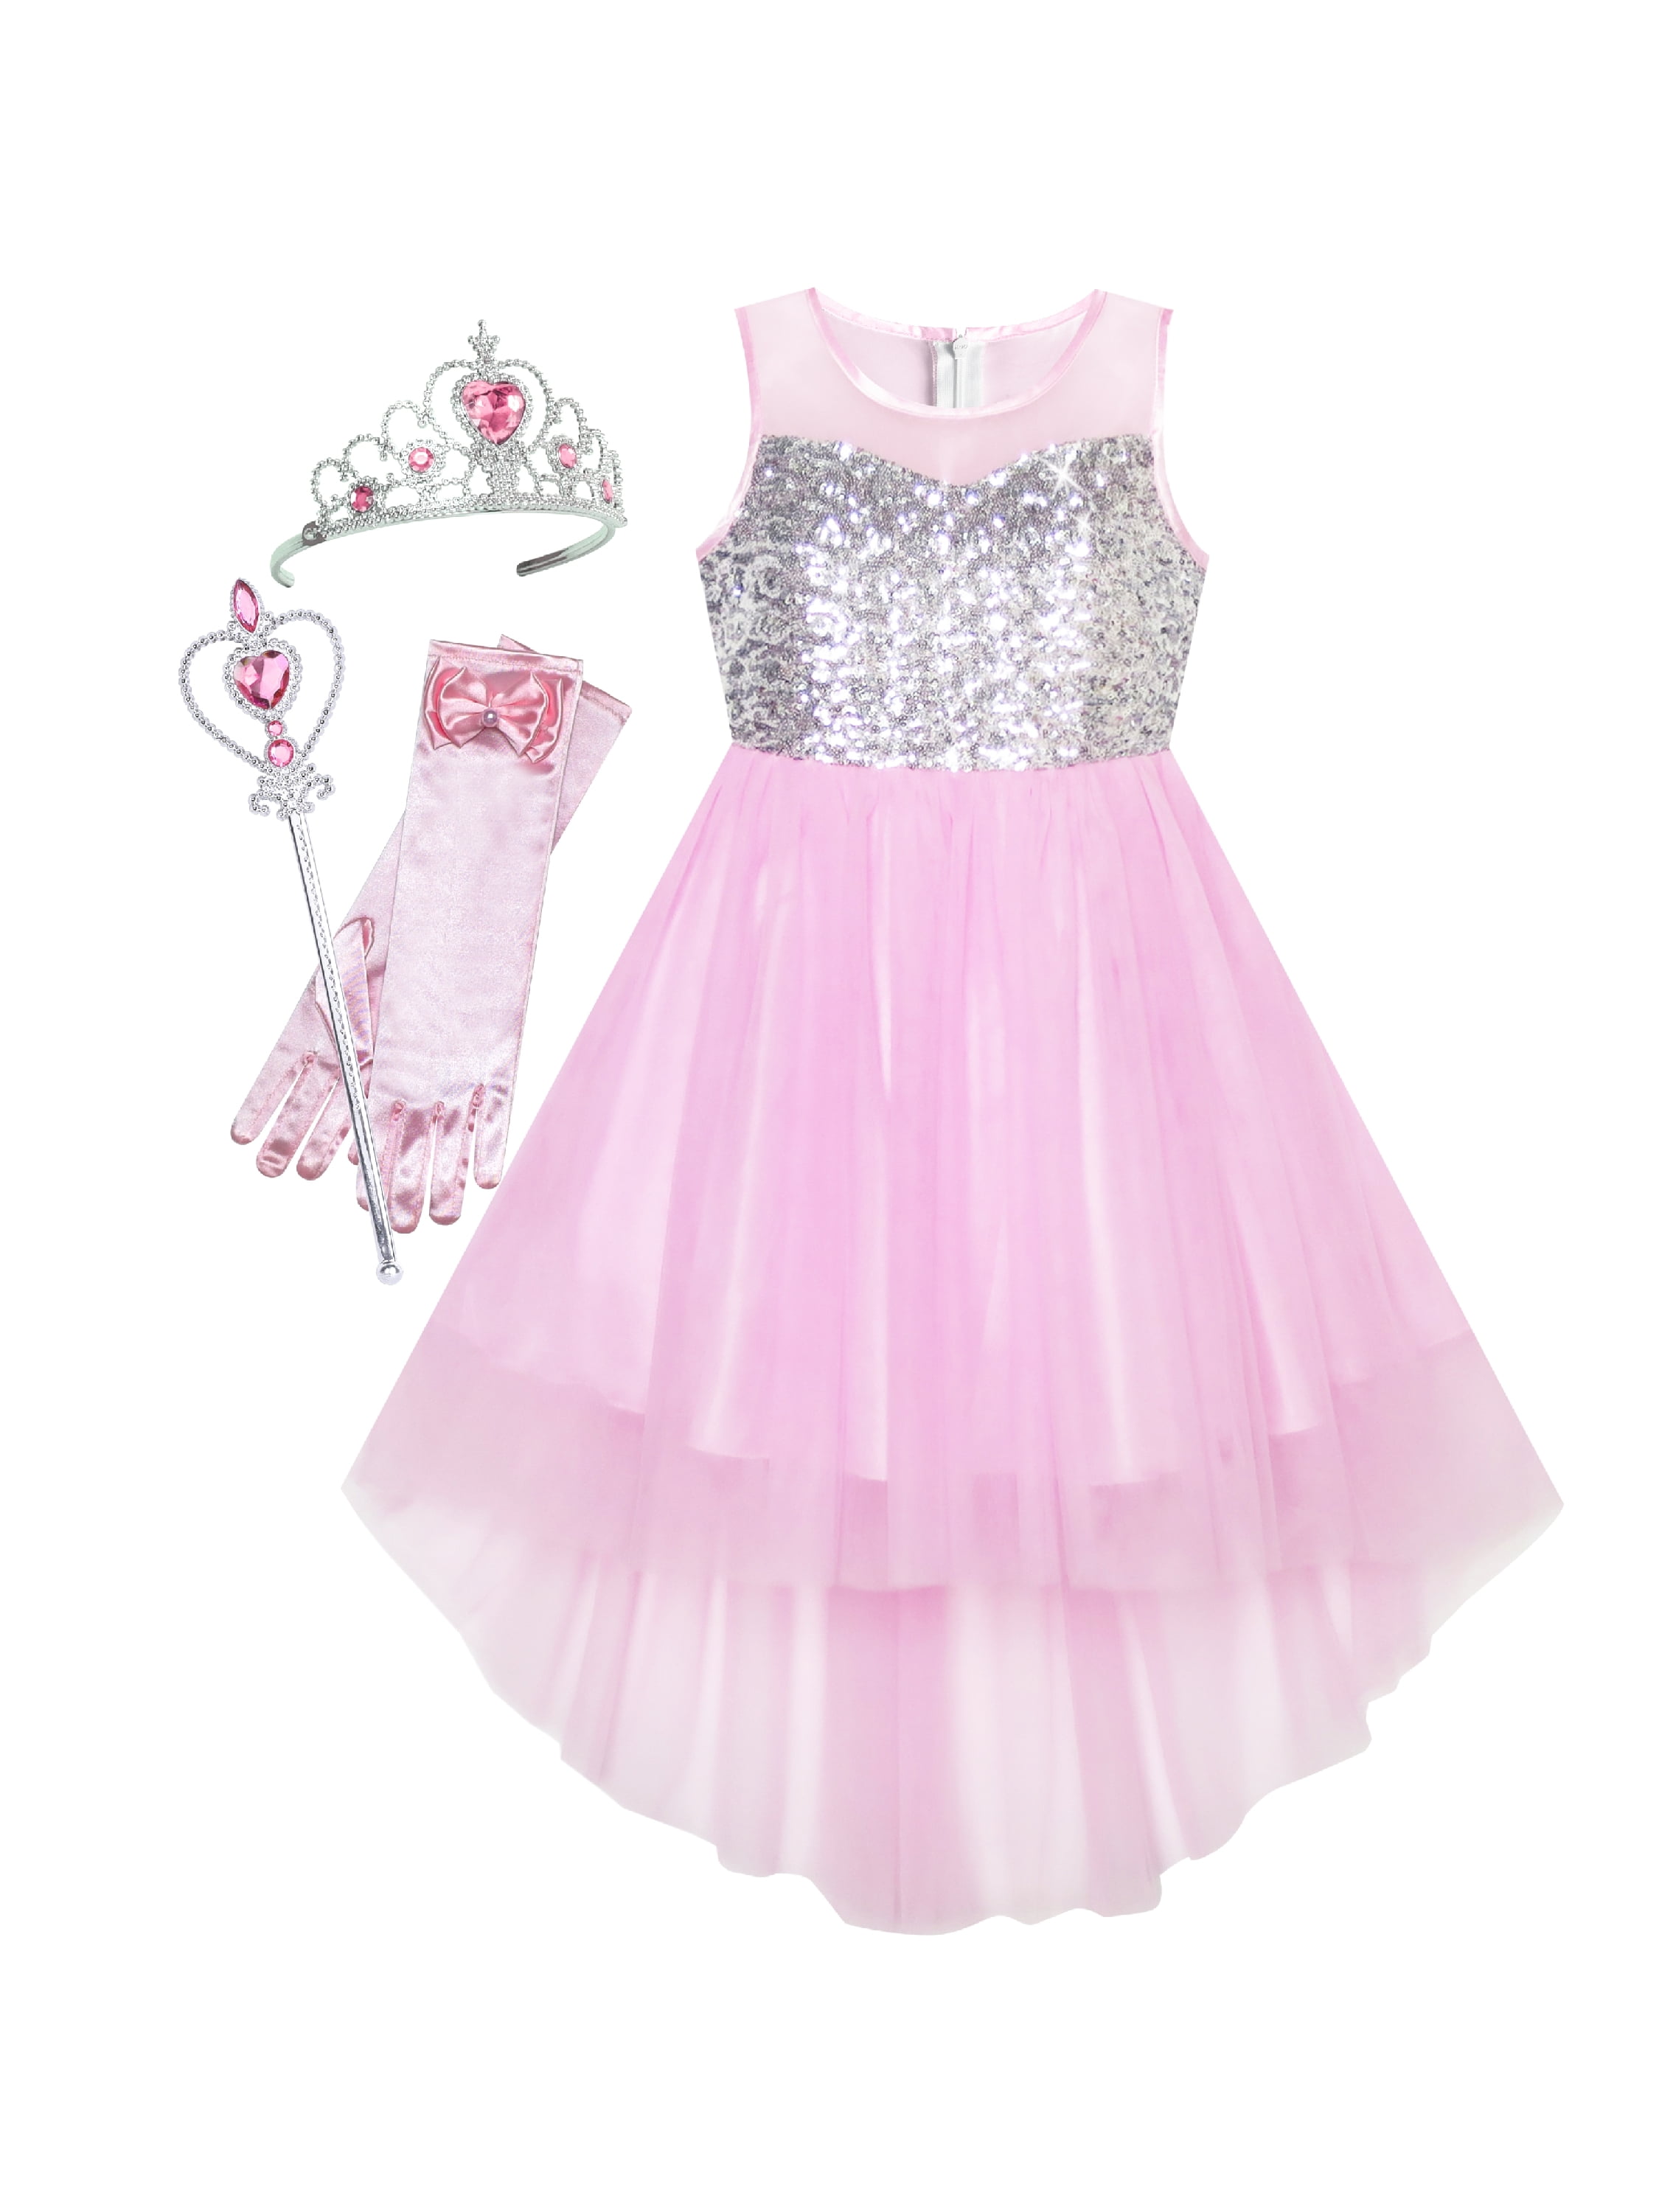 Girls Dress Pink Magic Hi-low Wand Princess Crown Dress Up Costume 14 ...